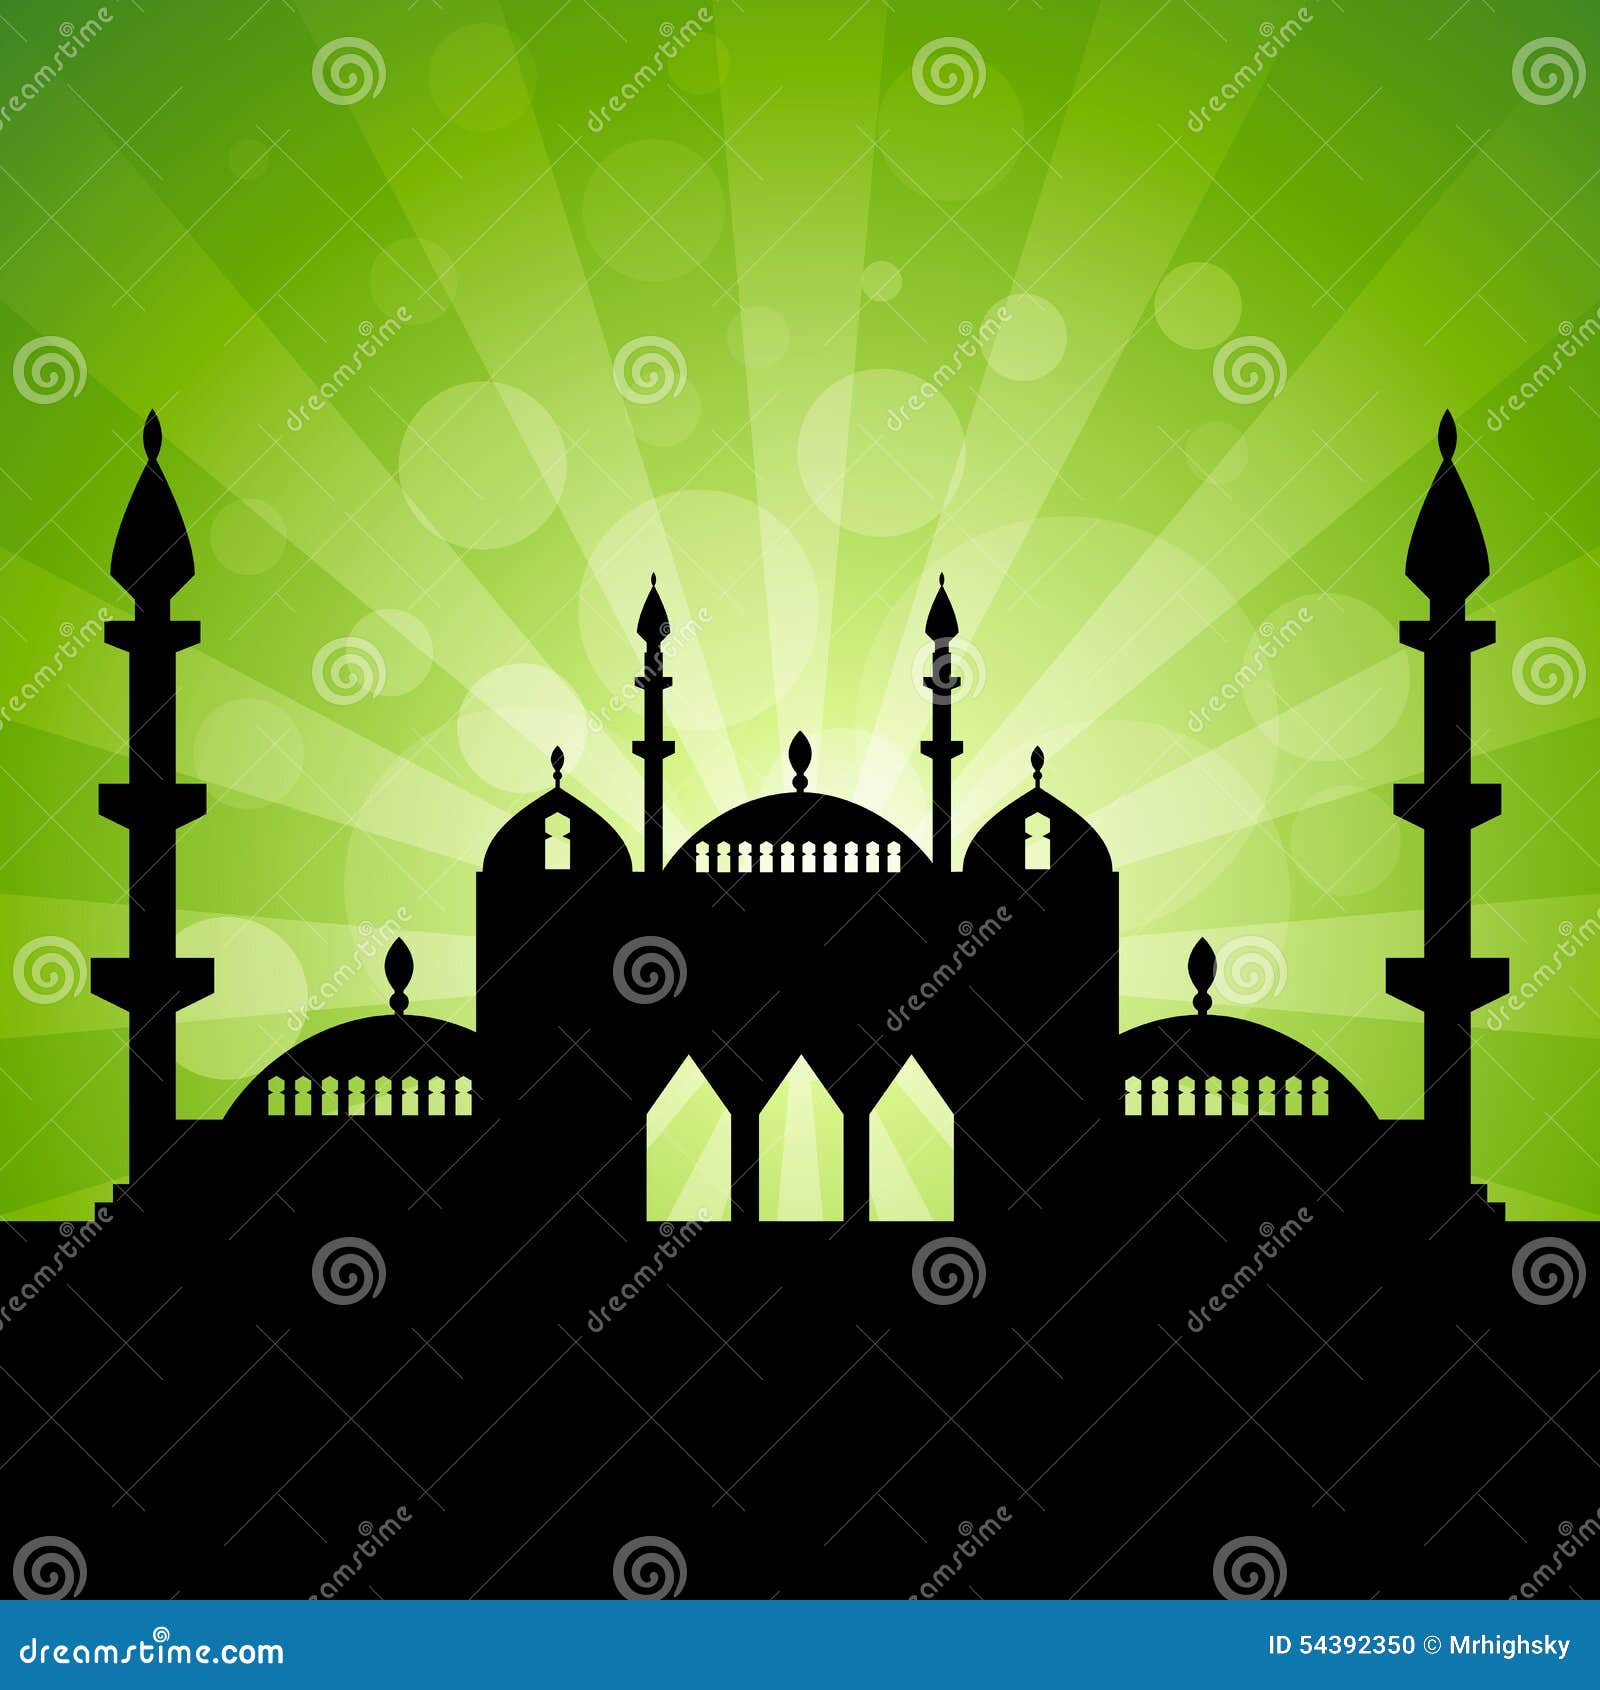 Unduh 5500 Koleksi Background Untuk Banner Islami Terbaik